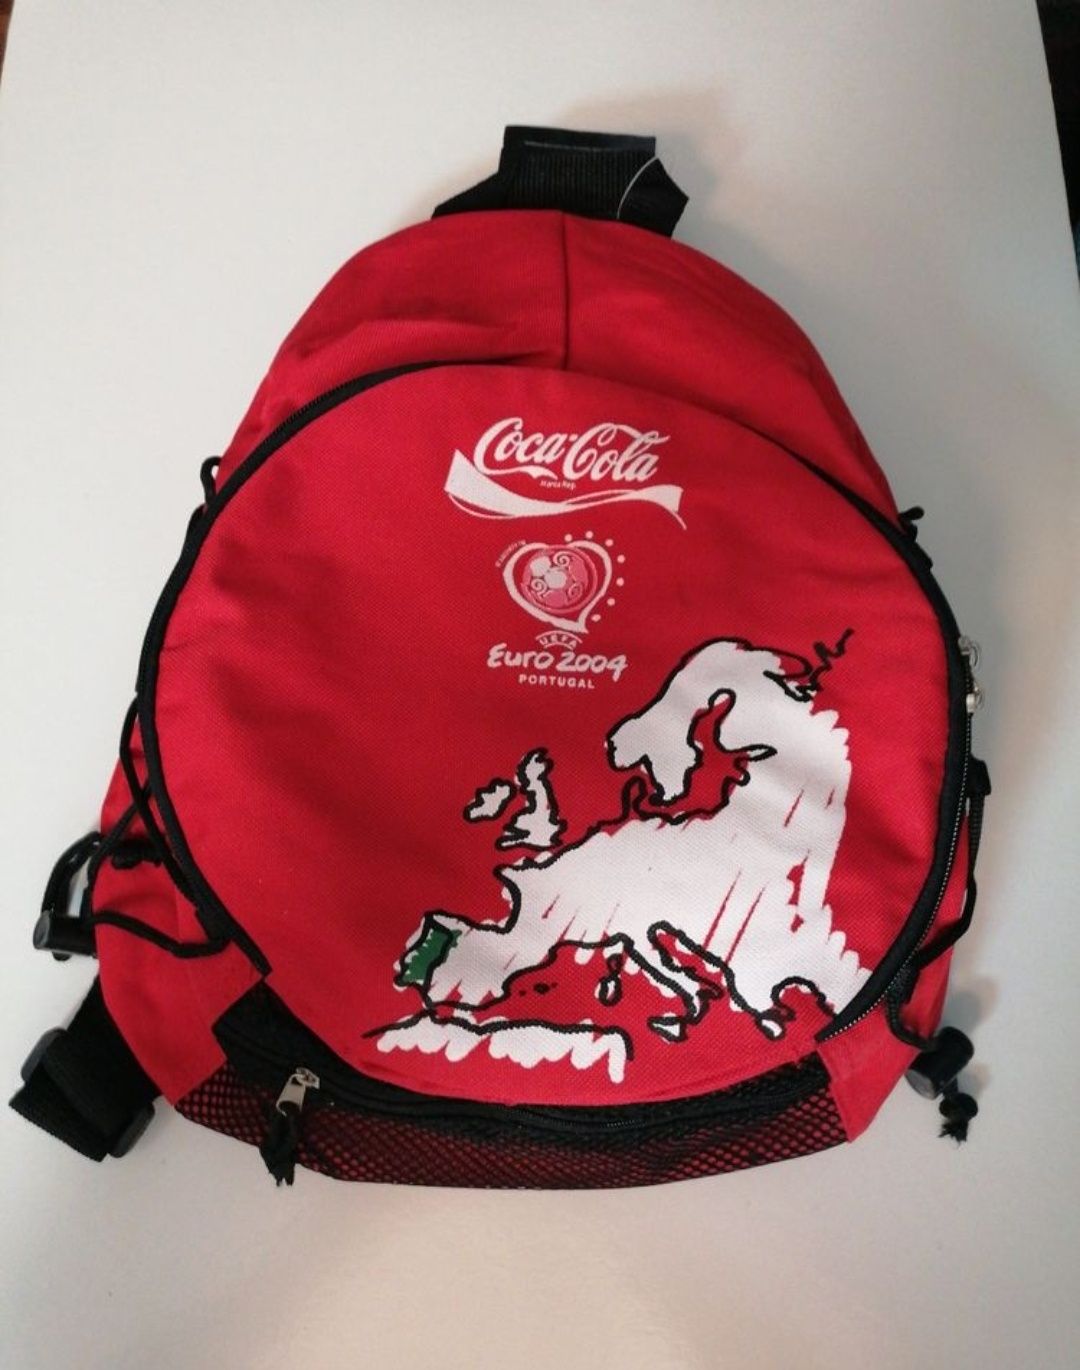 Mochila em tecido com publicidade da Coca-Cola, aquando do Euro 2004